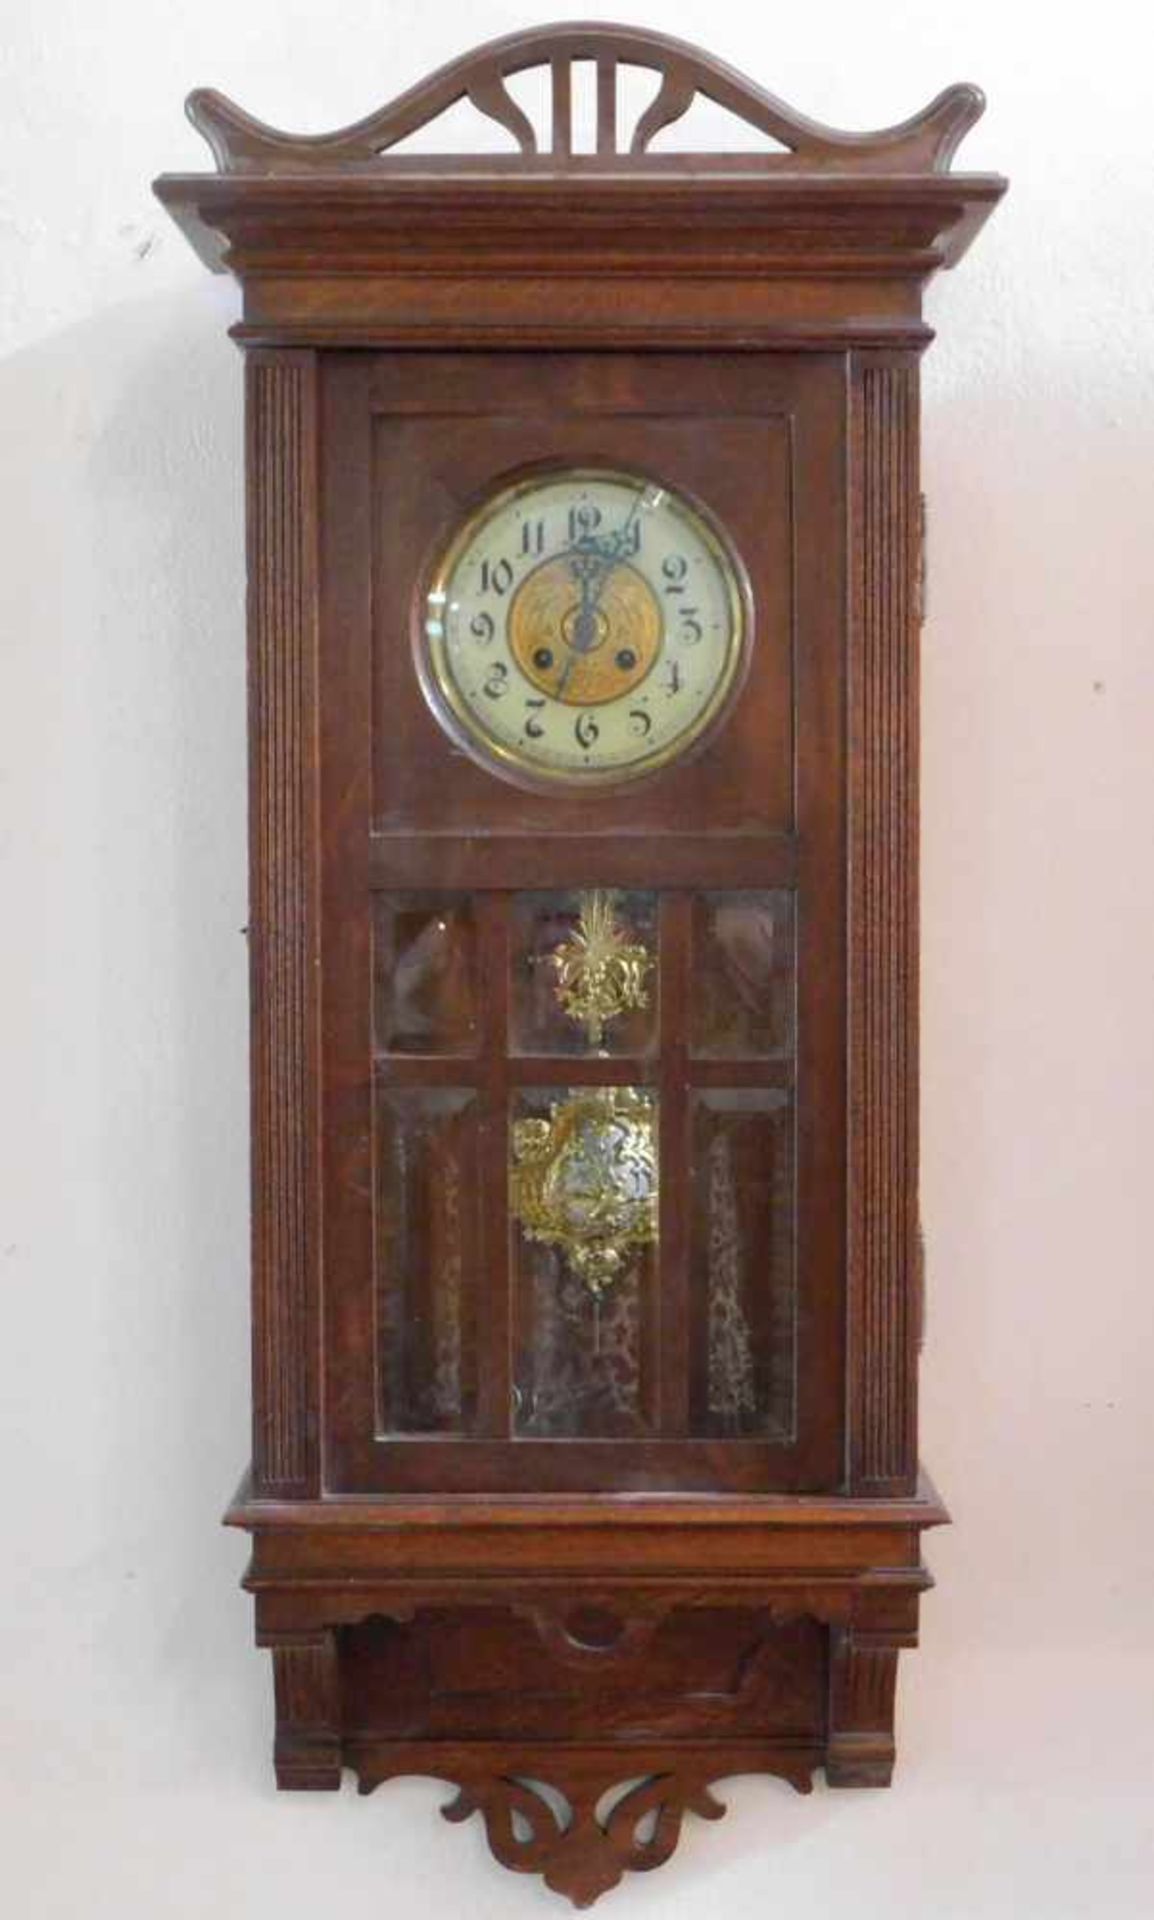 Großer Regulator, Eiche, Jugendstil um 1900, Glockengong, Uhrwerk punziert B.P. Patent und